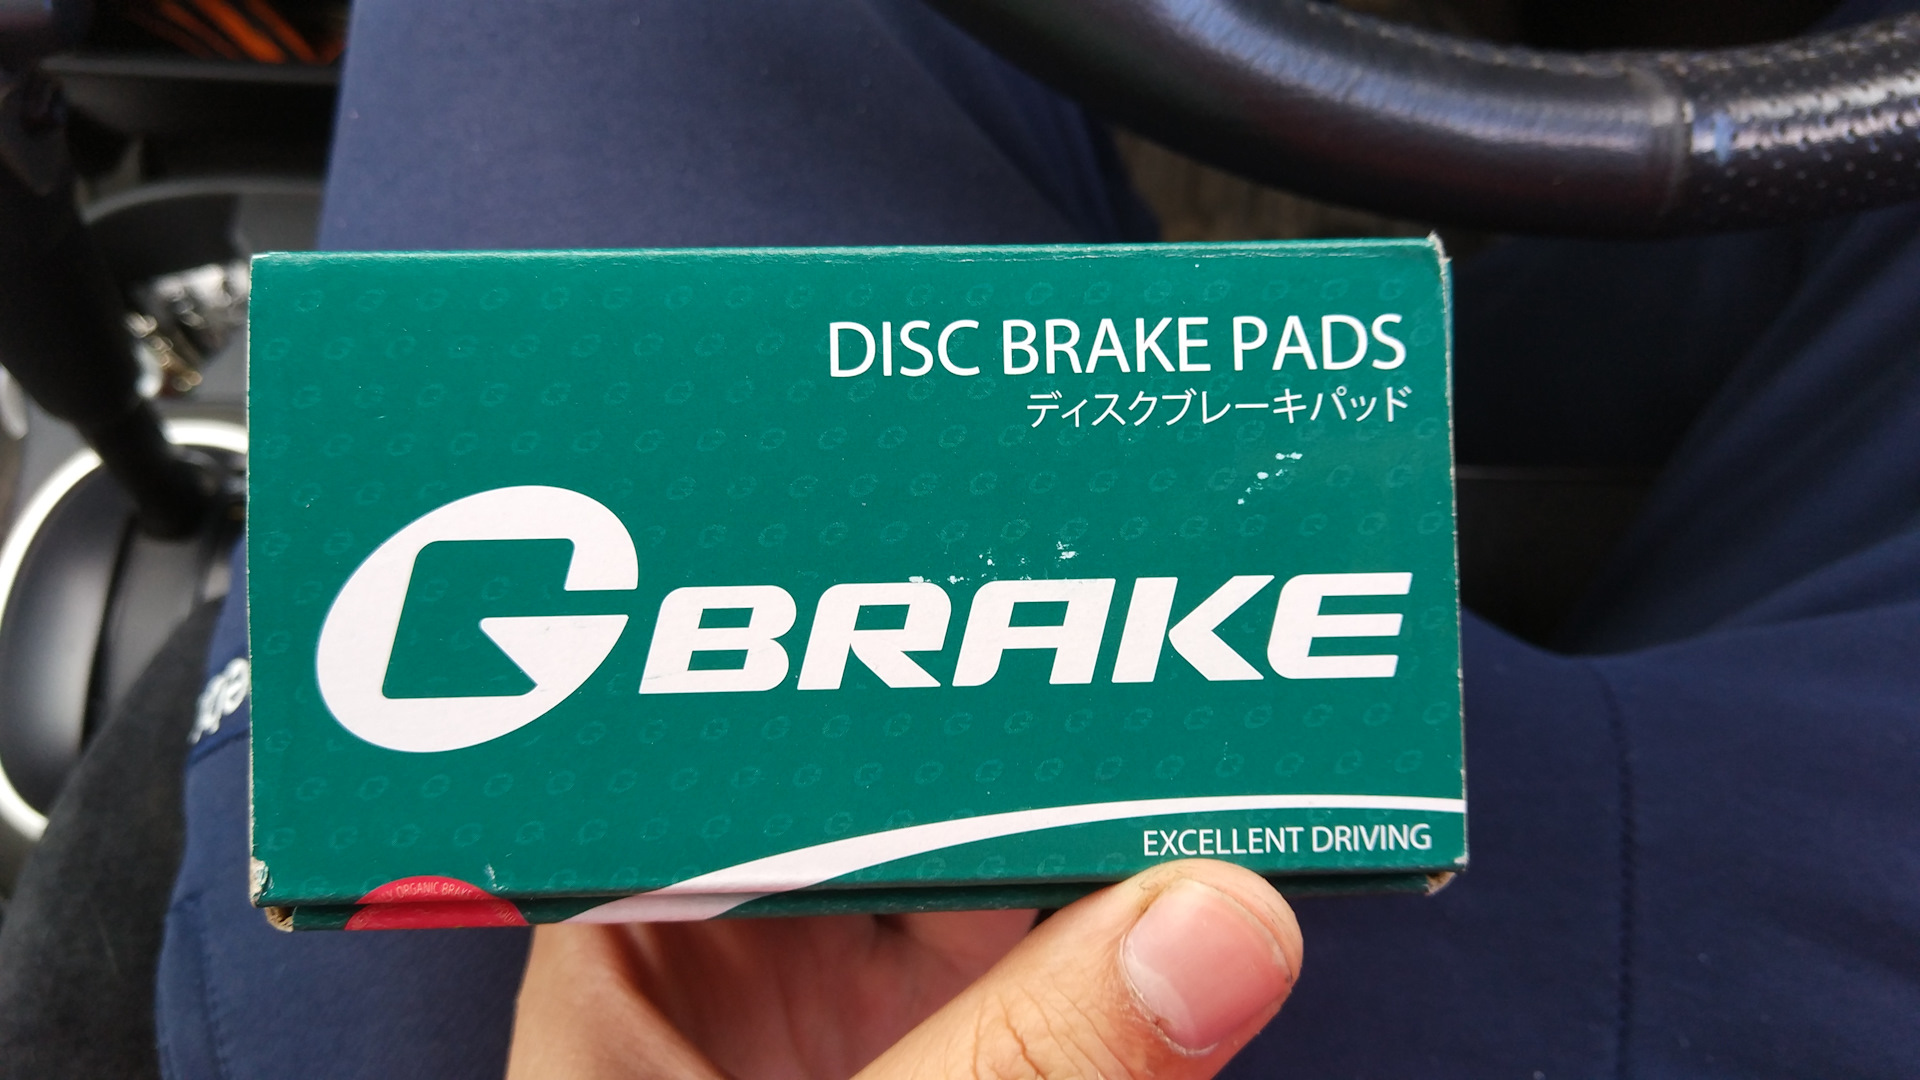 G brake производитель. G Brake. G-Brake запчасти бренд. Brake Pads logo. G-Brake отзывы.